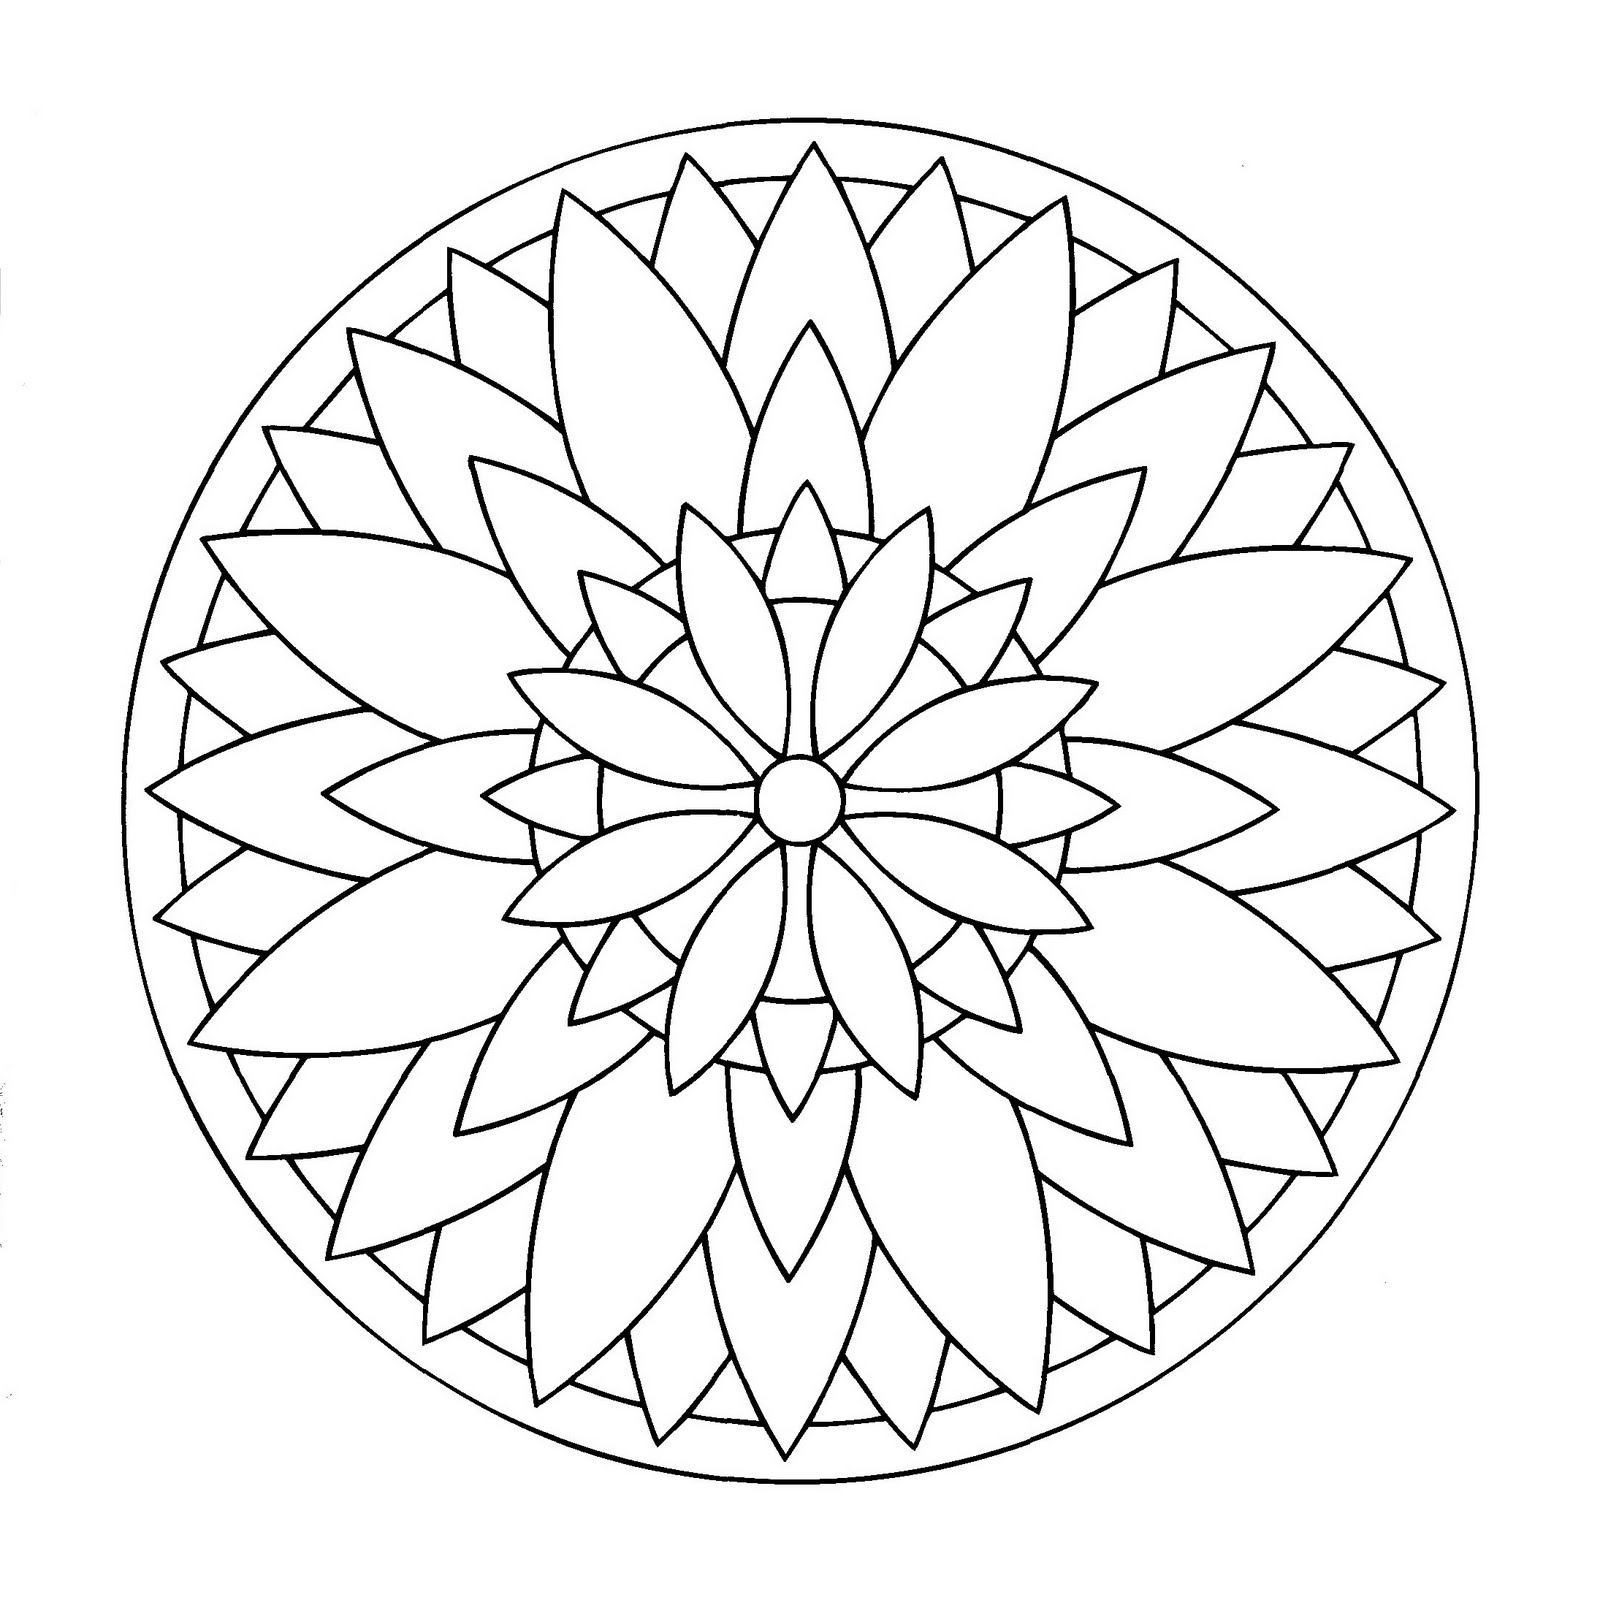 Cuando el mundo vegetal se funde perfectamente con un Mandala, el resultado es tan sencillo, ¿no es magnífico? Al final, este Mandala representa una flor con pétalos regulares y elegantes.